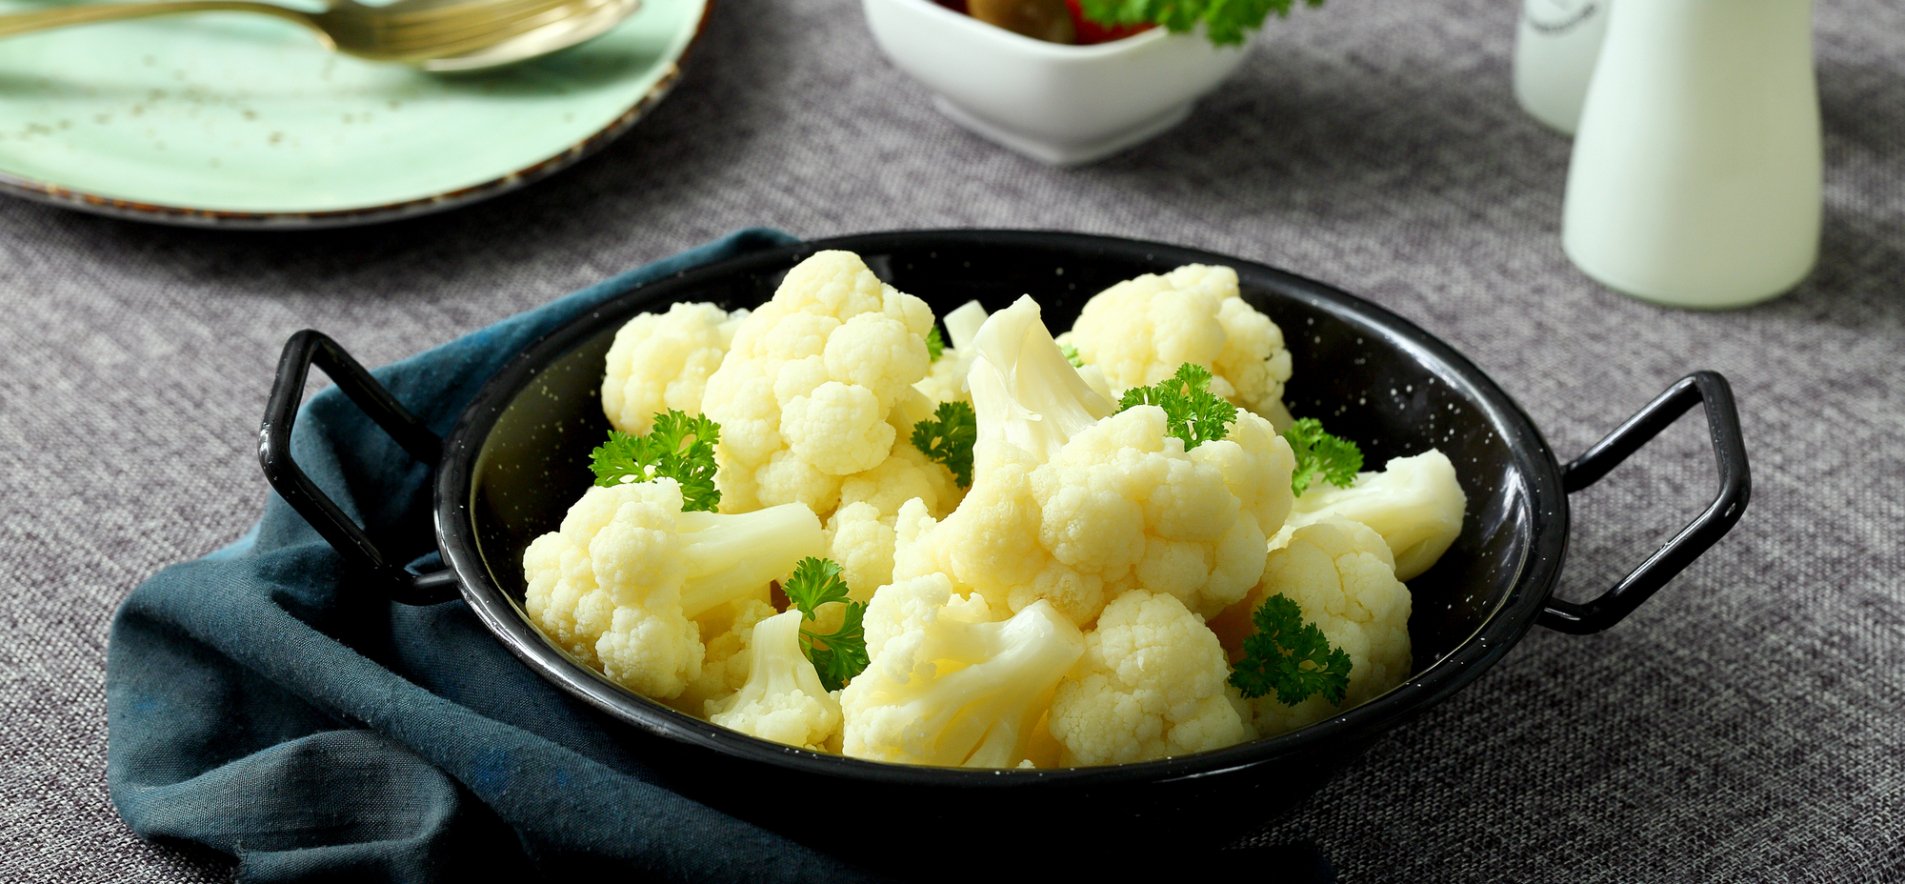 Отварная цветная капуста с сыром: научу готовить аппетитно и вкусно быстро и вкусно: рецепт с фото